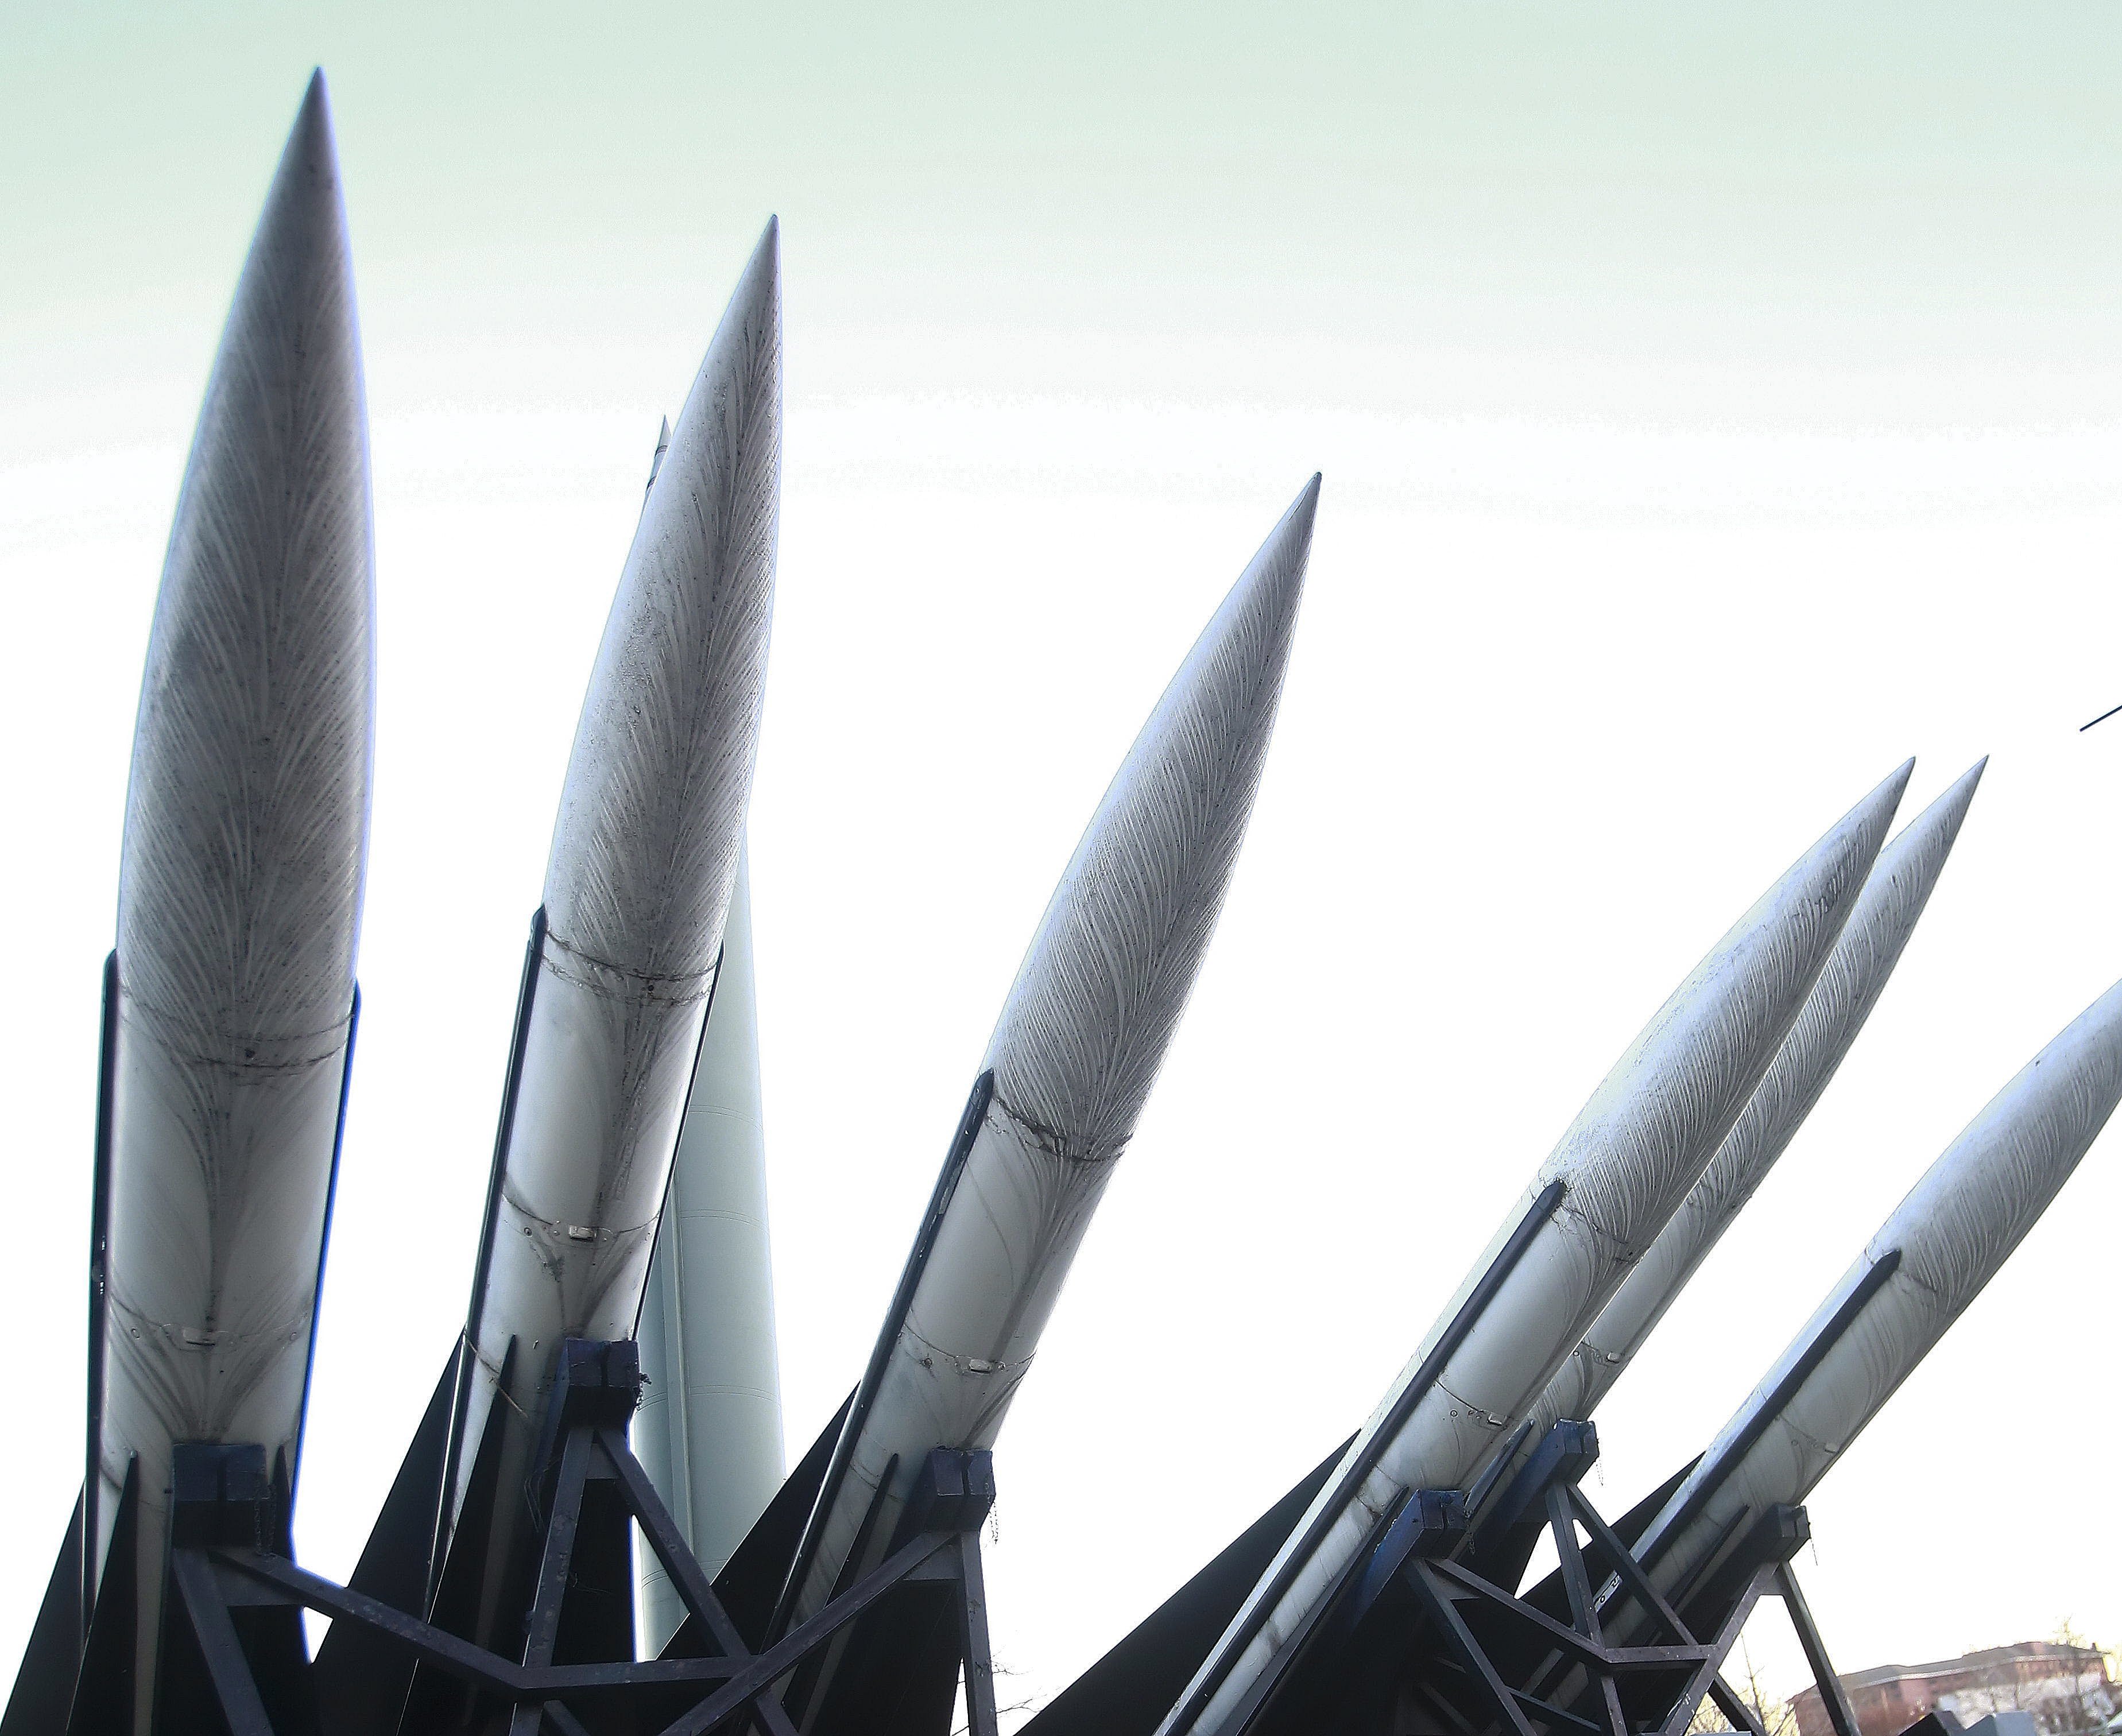 El pasado 5 de agosto, el Consejo de Seguridad de las Naciones Unidas acordó ampliar la lista de sanciones contra Pyonyang para intentar que la nación asiática deje de probar misiles. 